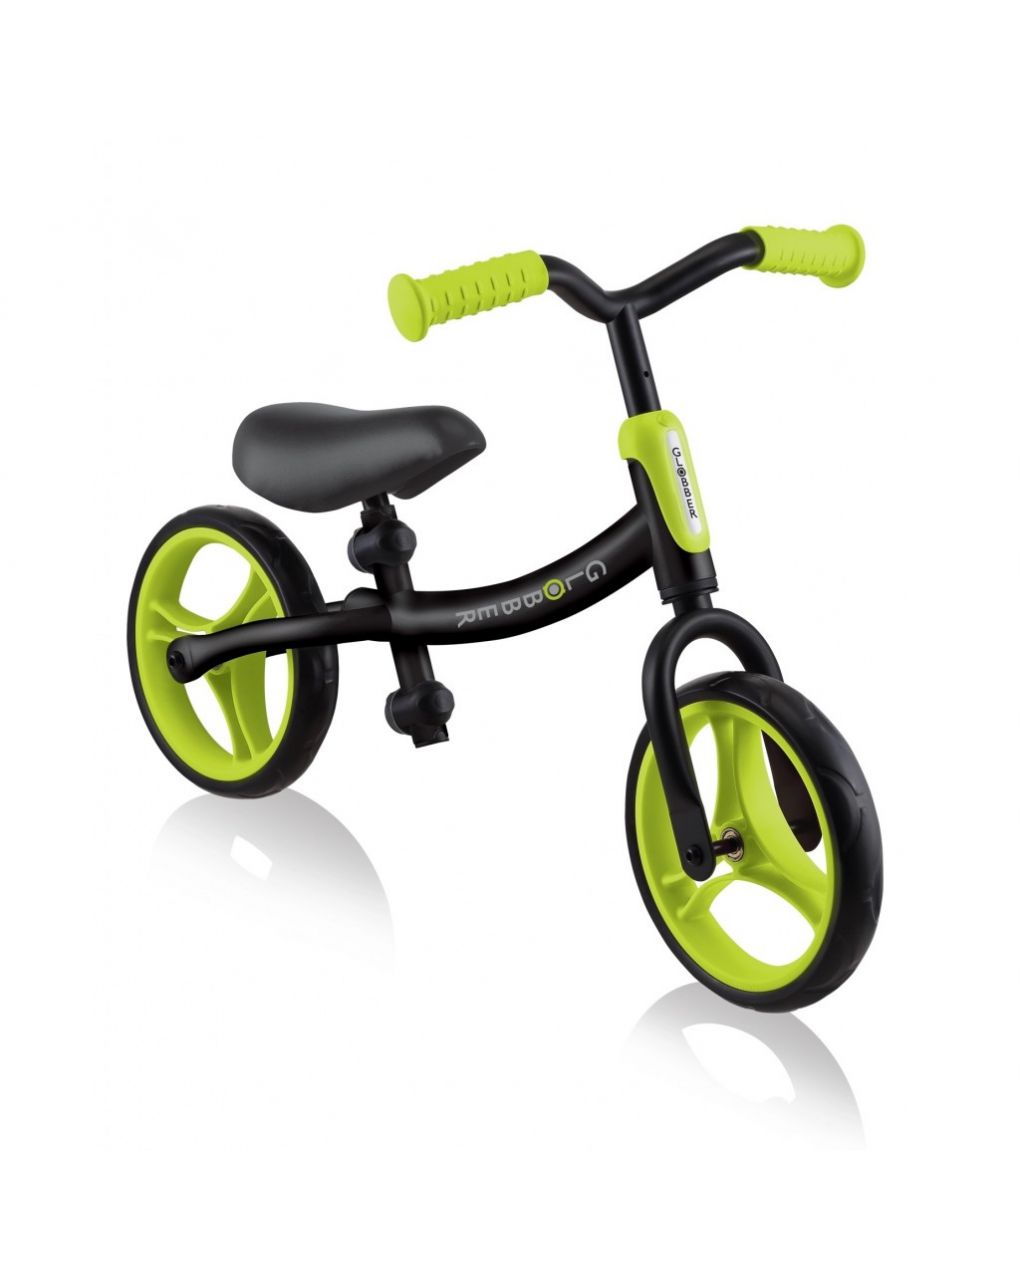 Go bike – black/lime green - globber - Globber